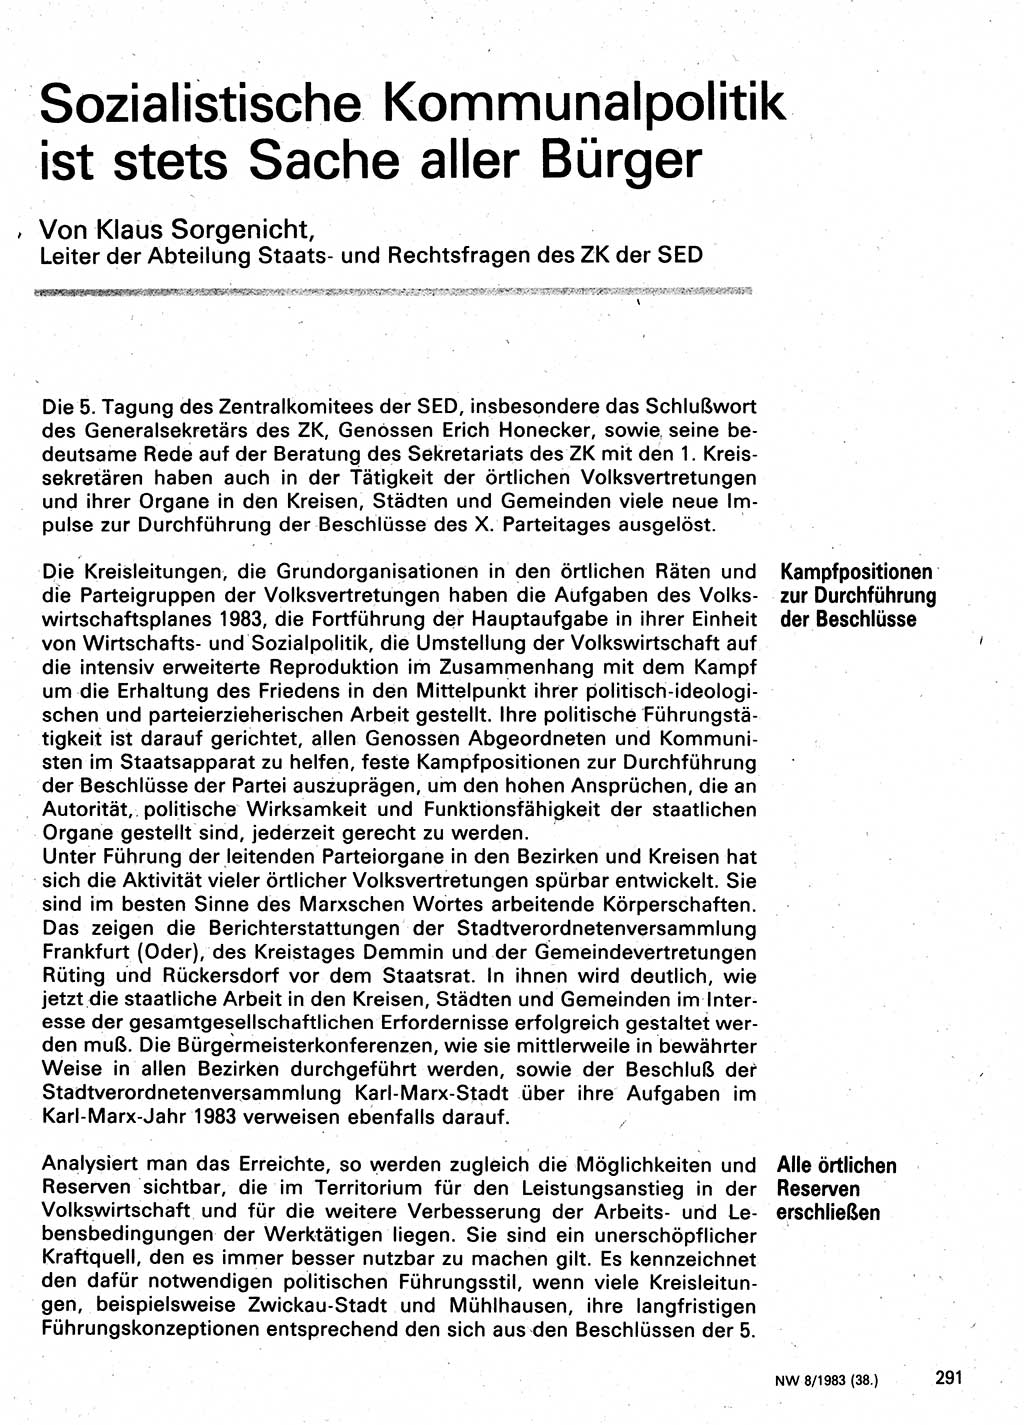 Neuer Weg (NW), Organ des Zentralkomitees (ZK) der SED (Sozialistische Einheitspartei Deutschlands) für Fragen des Parteilebens, 38. Jahrgang [Deutsche Demokratische Republik (DDR)] 1983, Seite 291 (NW ZK SED DDR 1983, S. 291)